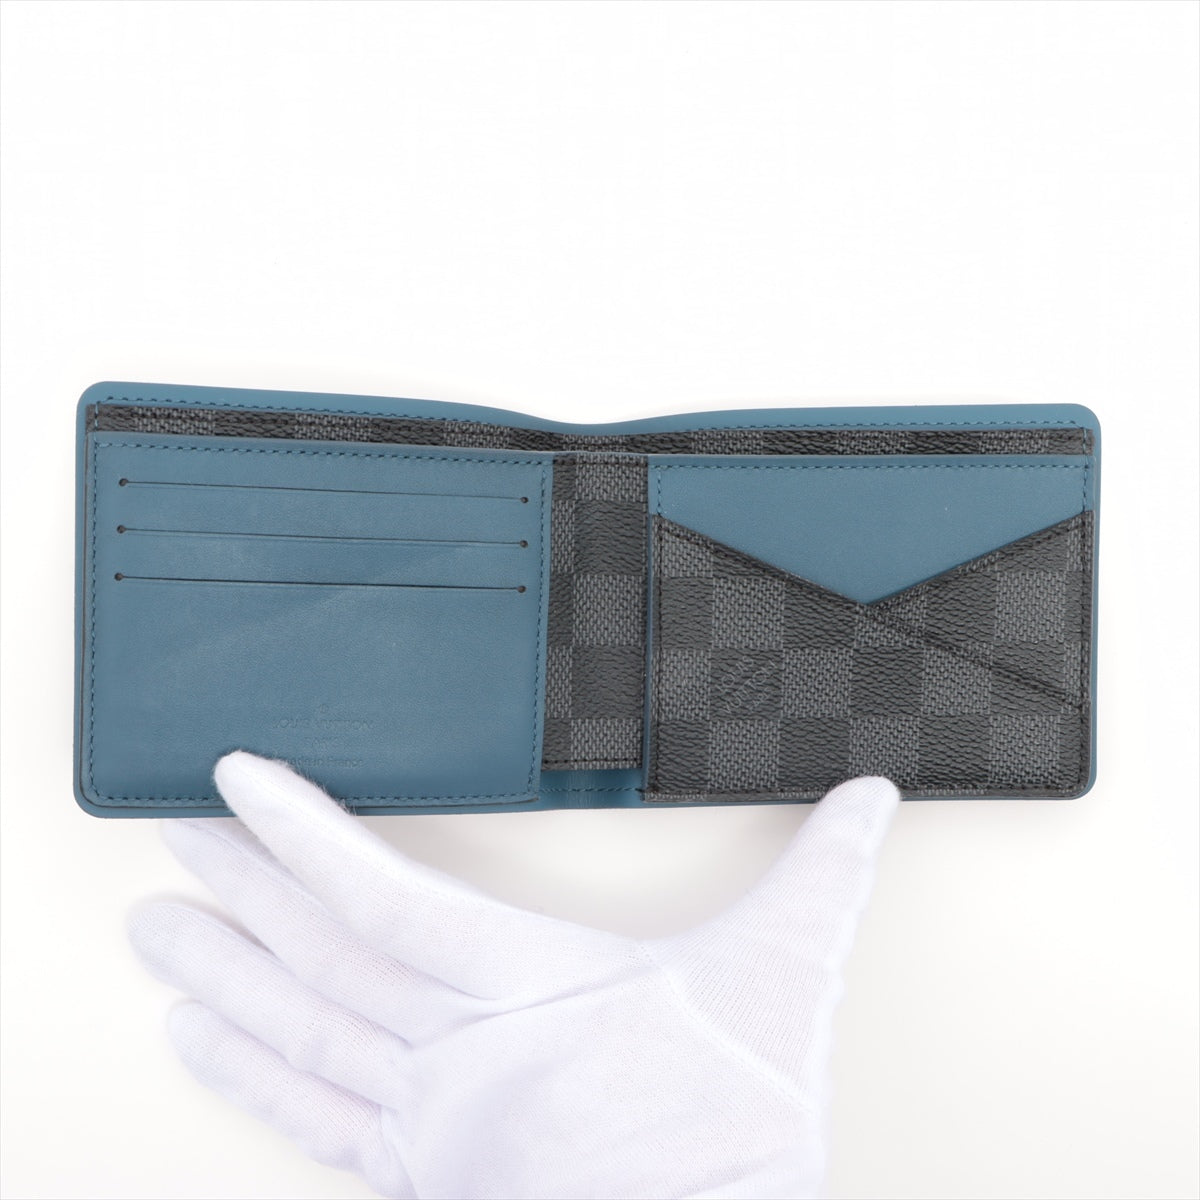 Louis Vuitton Damiere Portfolio Multiple N64434 Blue x Black Compact Wallet